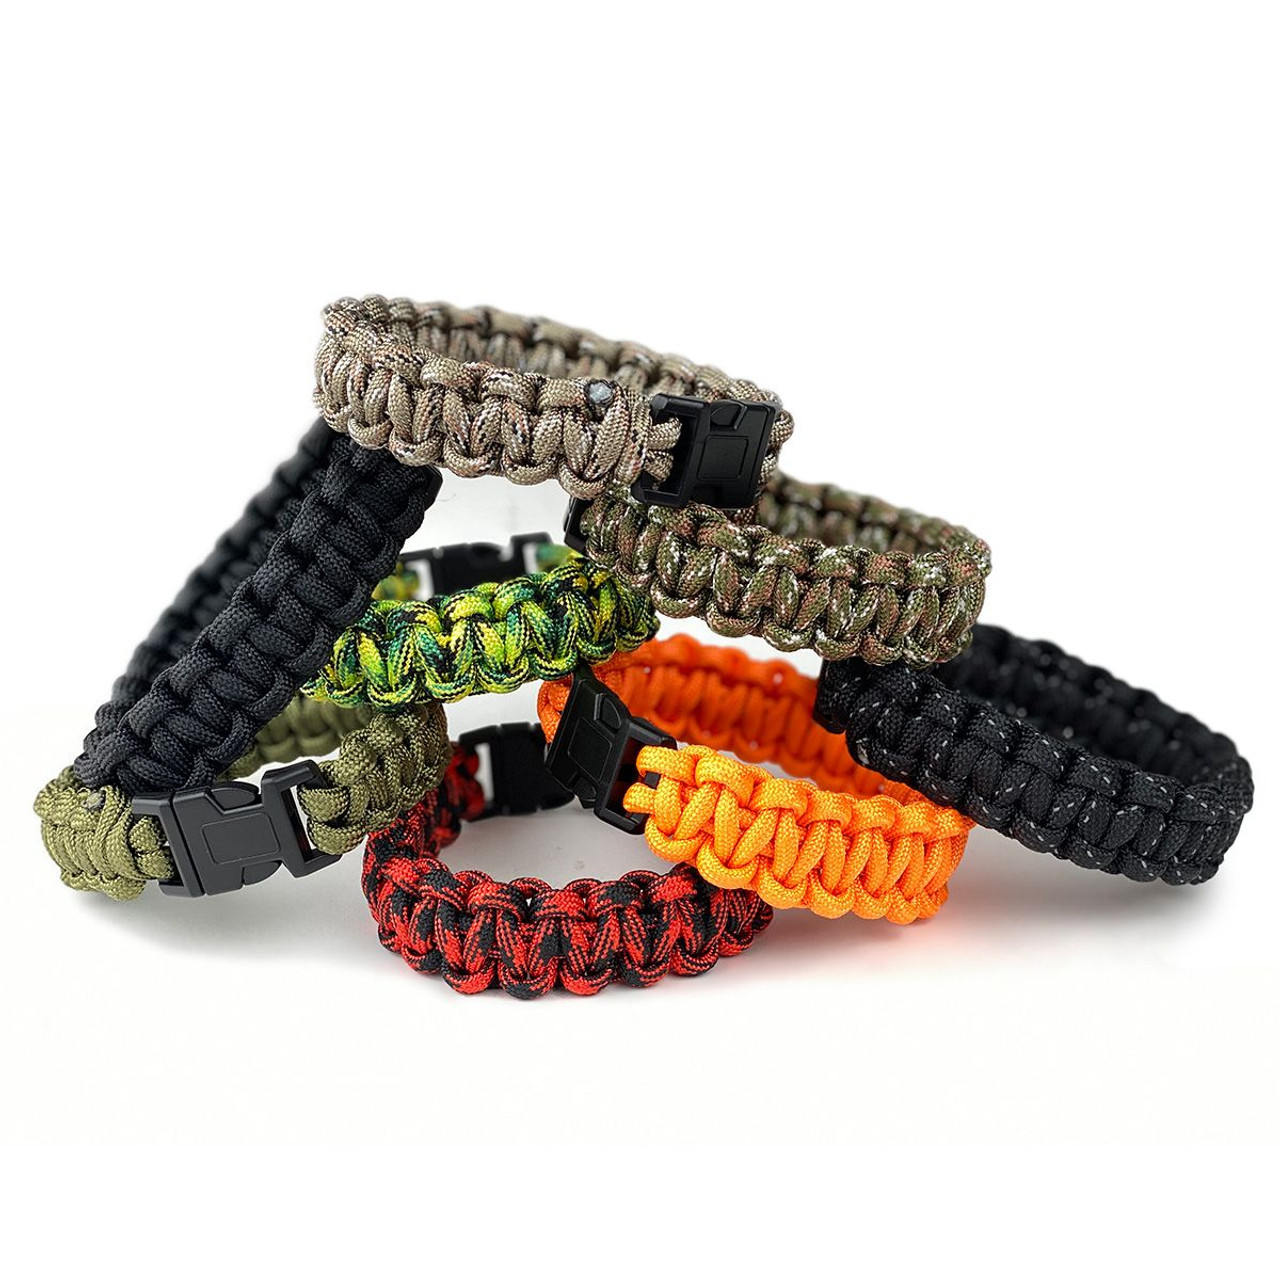 Wholesale Survival Bracelets, Paracord Bracelet, Survival Straps